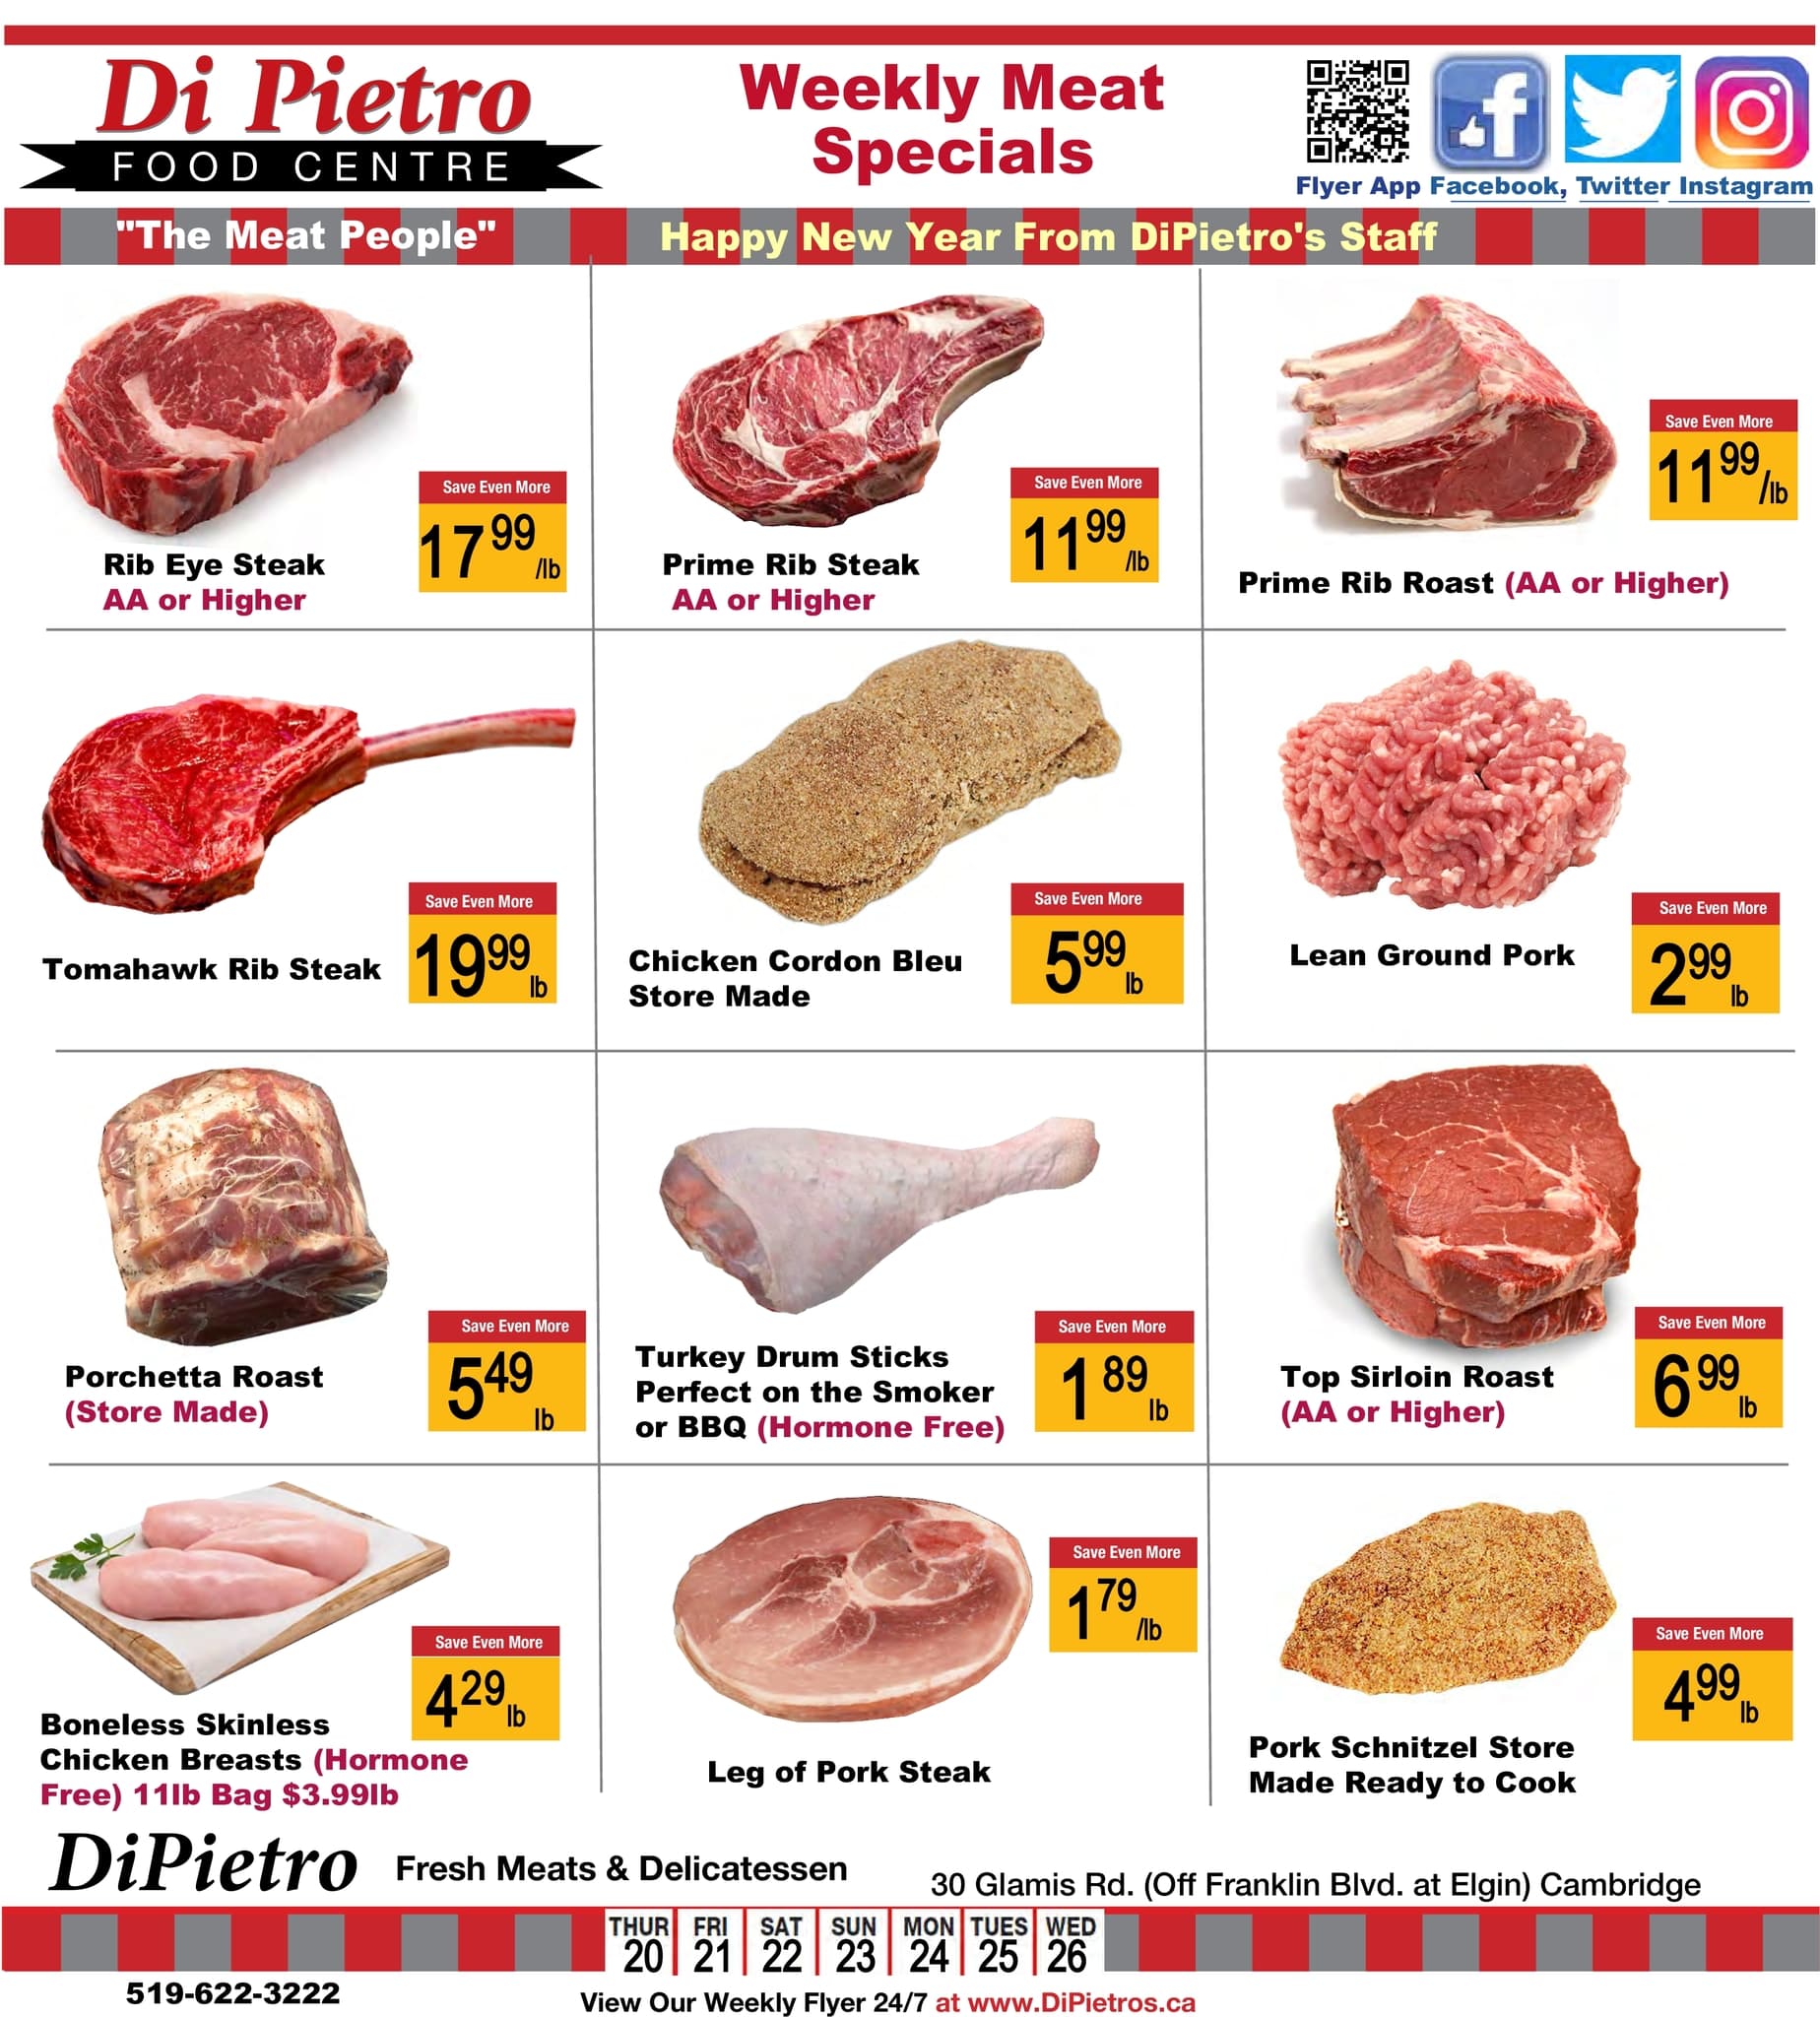 DiPietro - Weekly Flyer Specials - Page 2